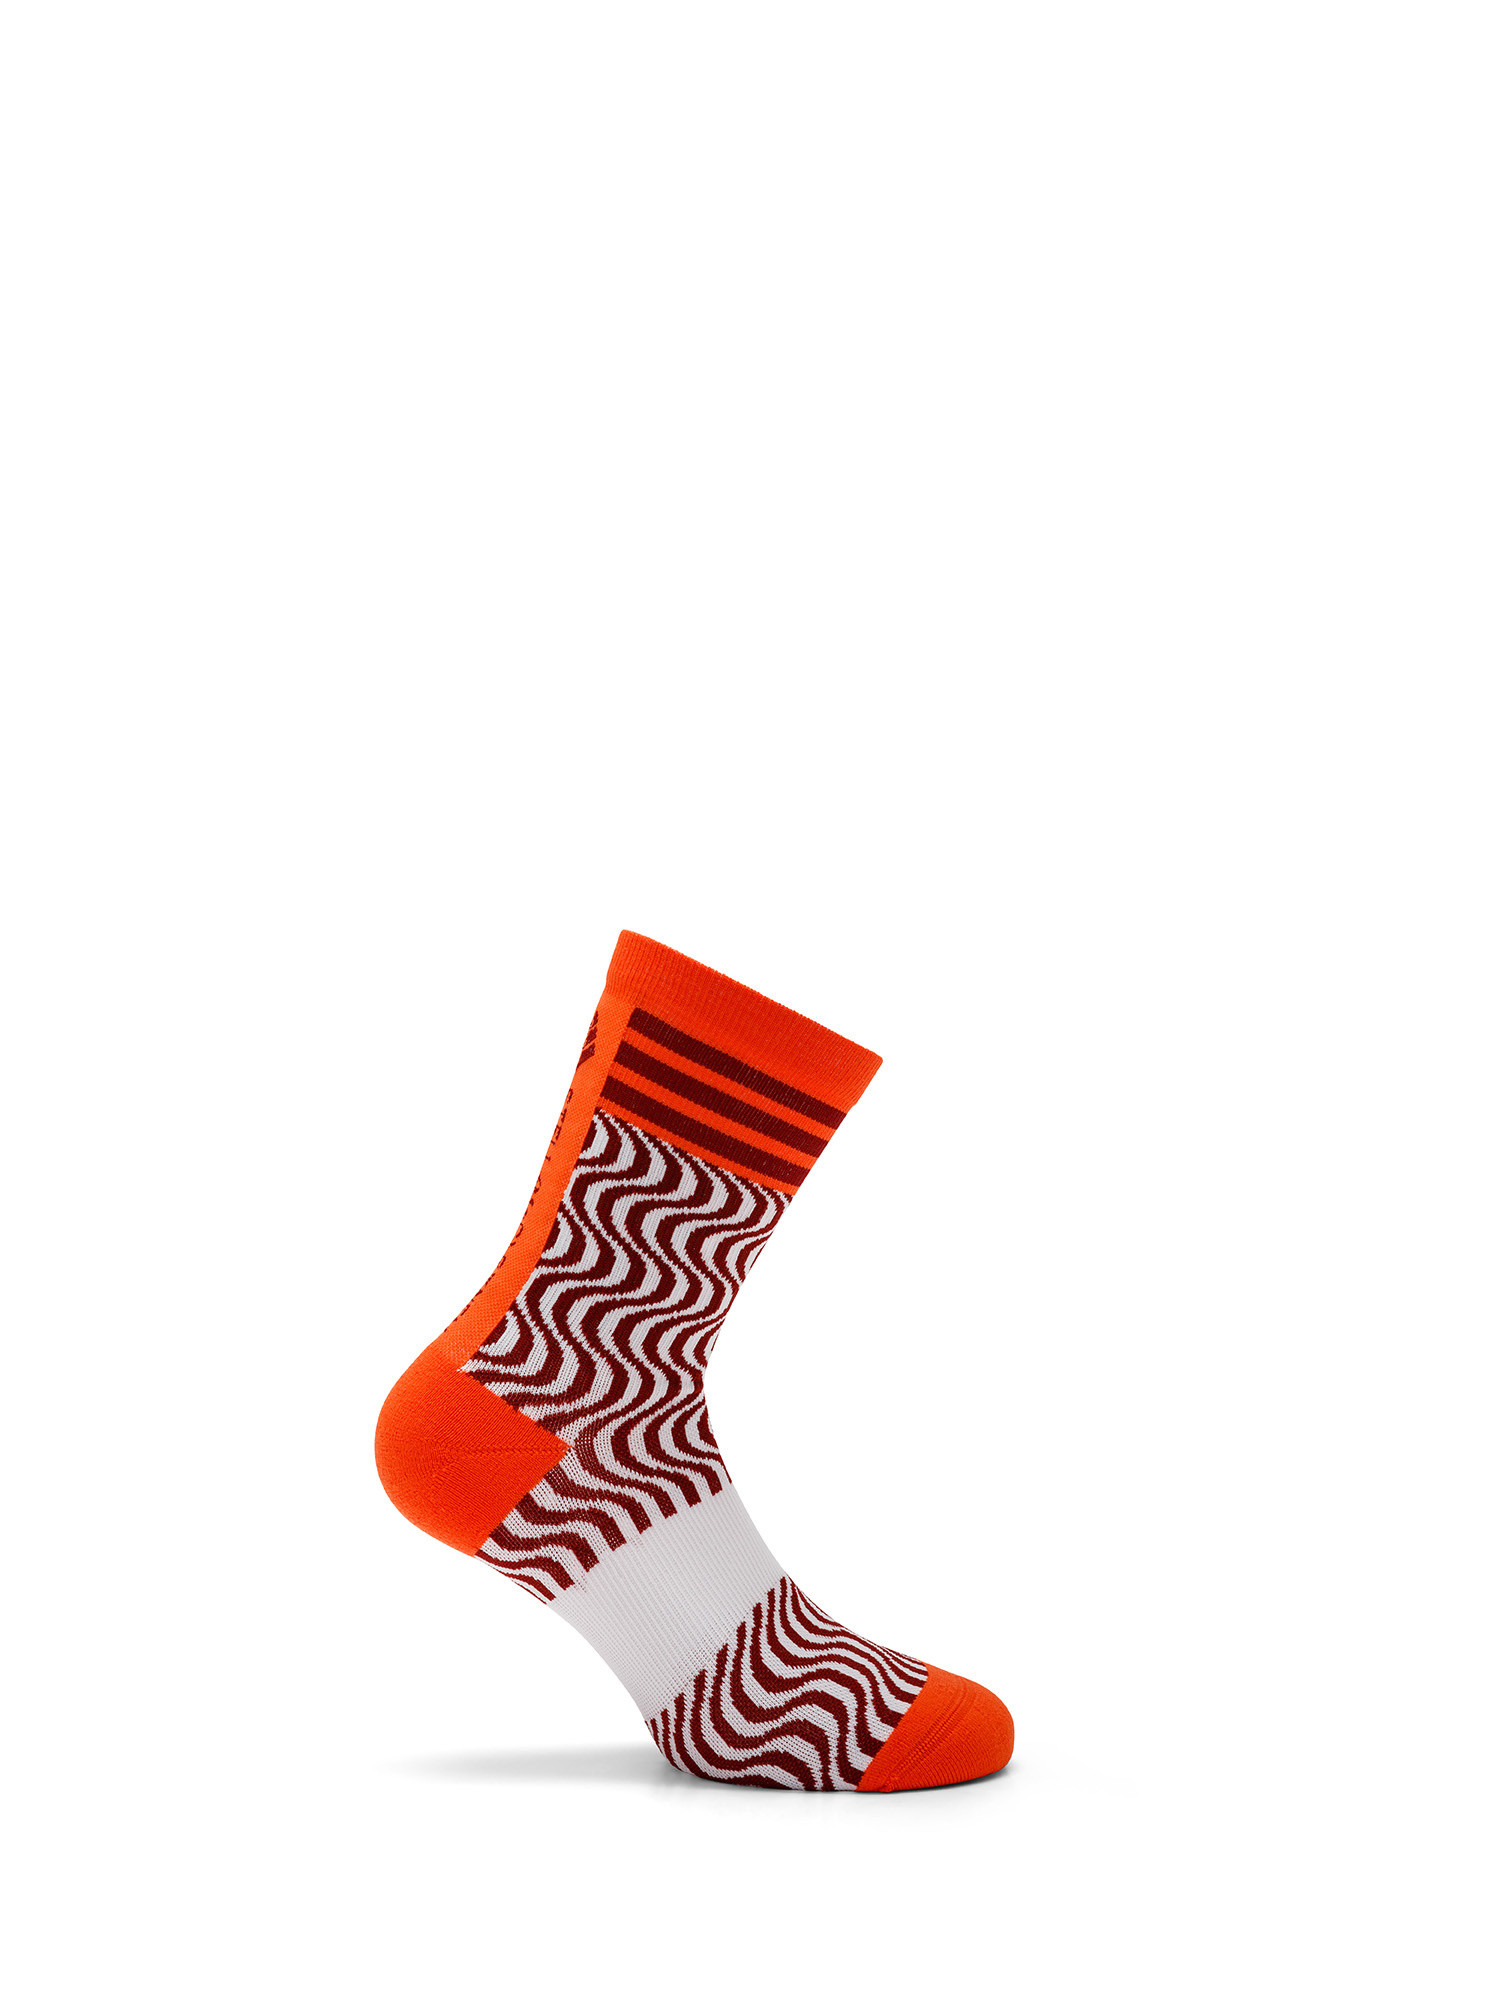 Adidas by Stella McCartney - Logo socks, White, large image number 1